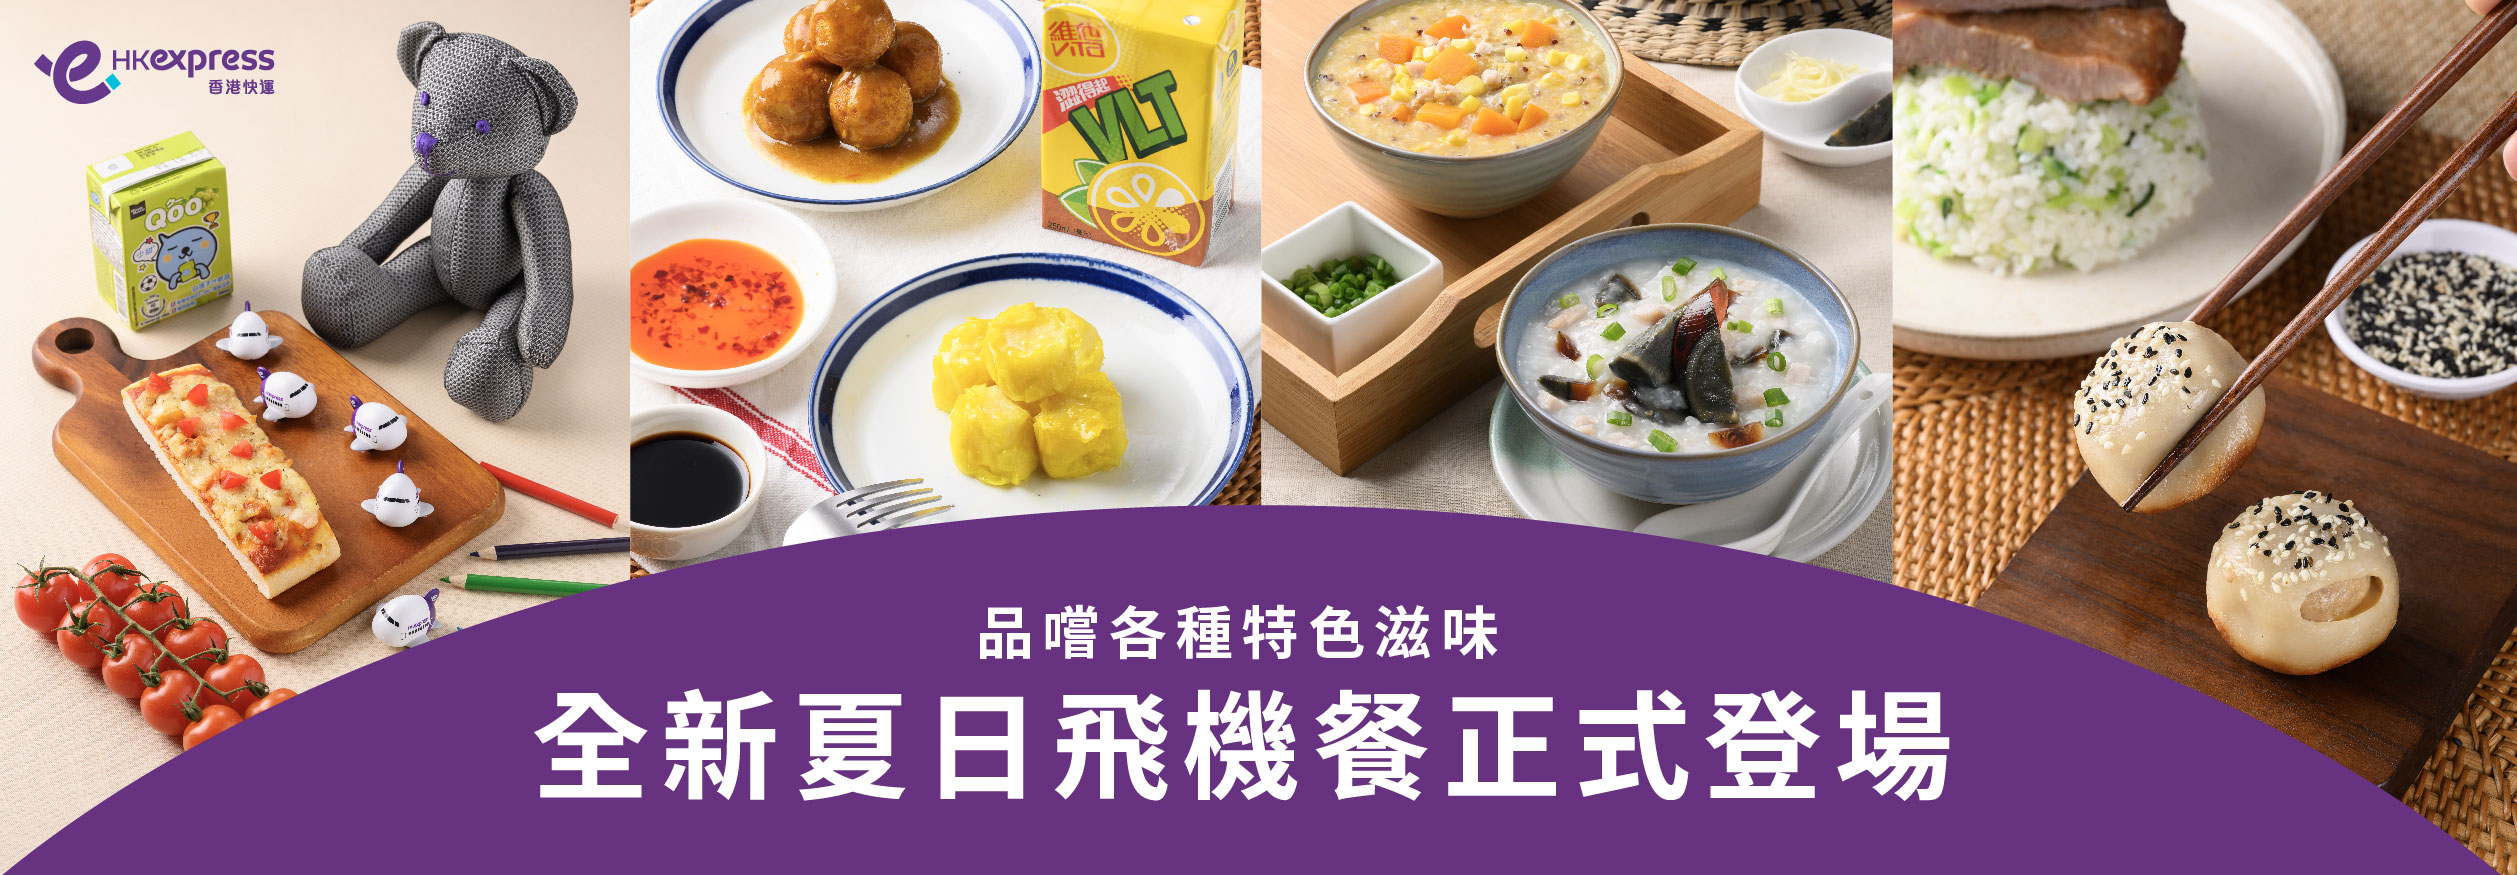 HKE Food & Drinks Banner